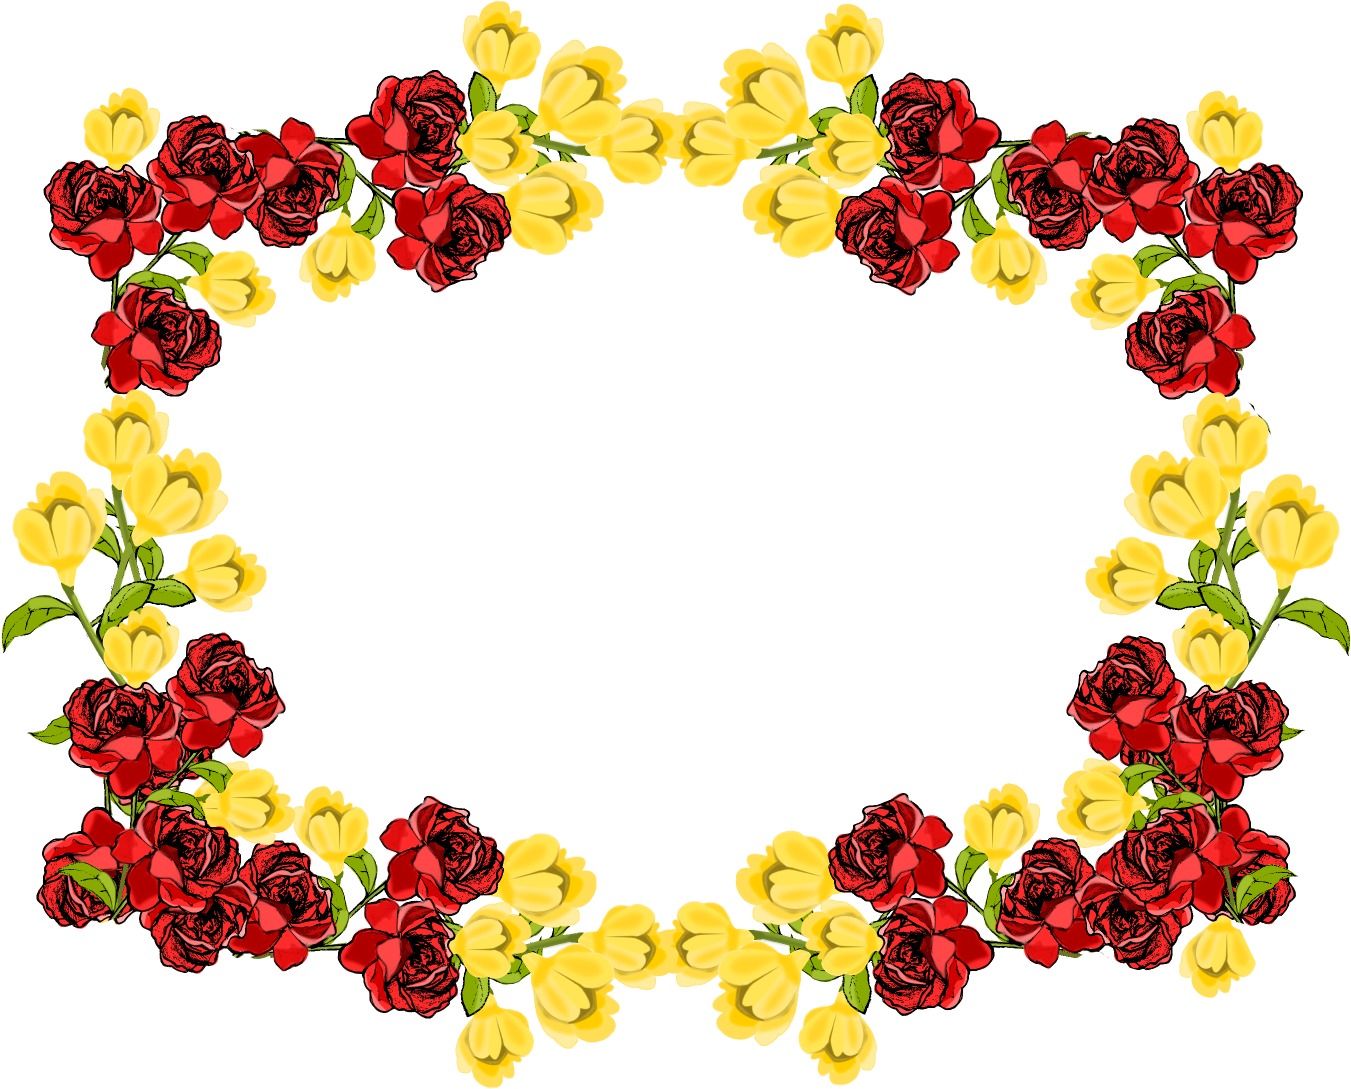 Flower Frame Border Background PNG Image